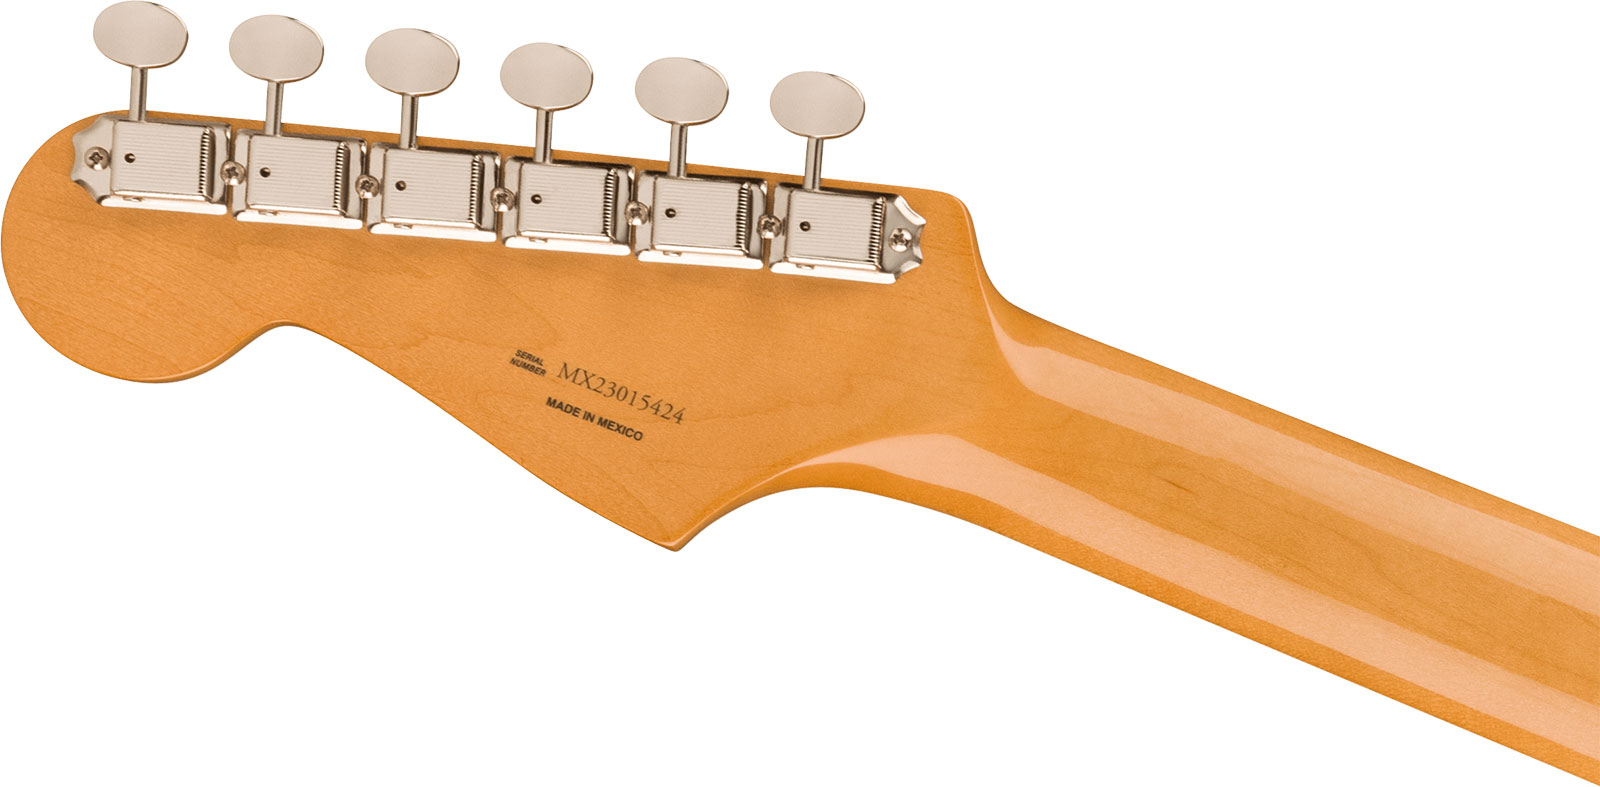 Fender Strat 60s Vintera 2 Mex 3s Trem Rw - Olympic White - Elektrische gitaar in Str-vorm - Variation 3